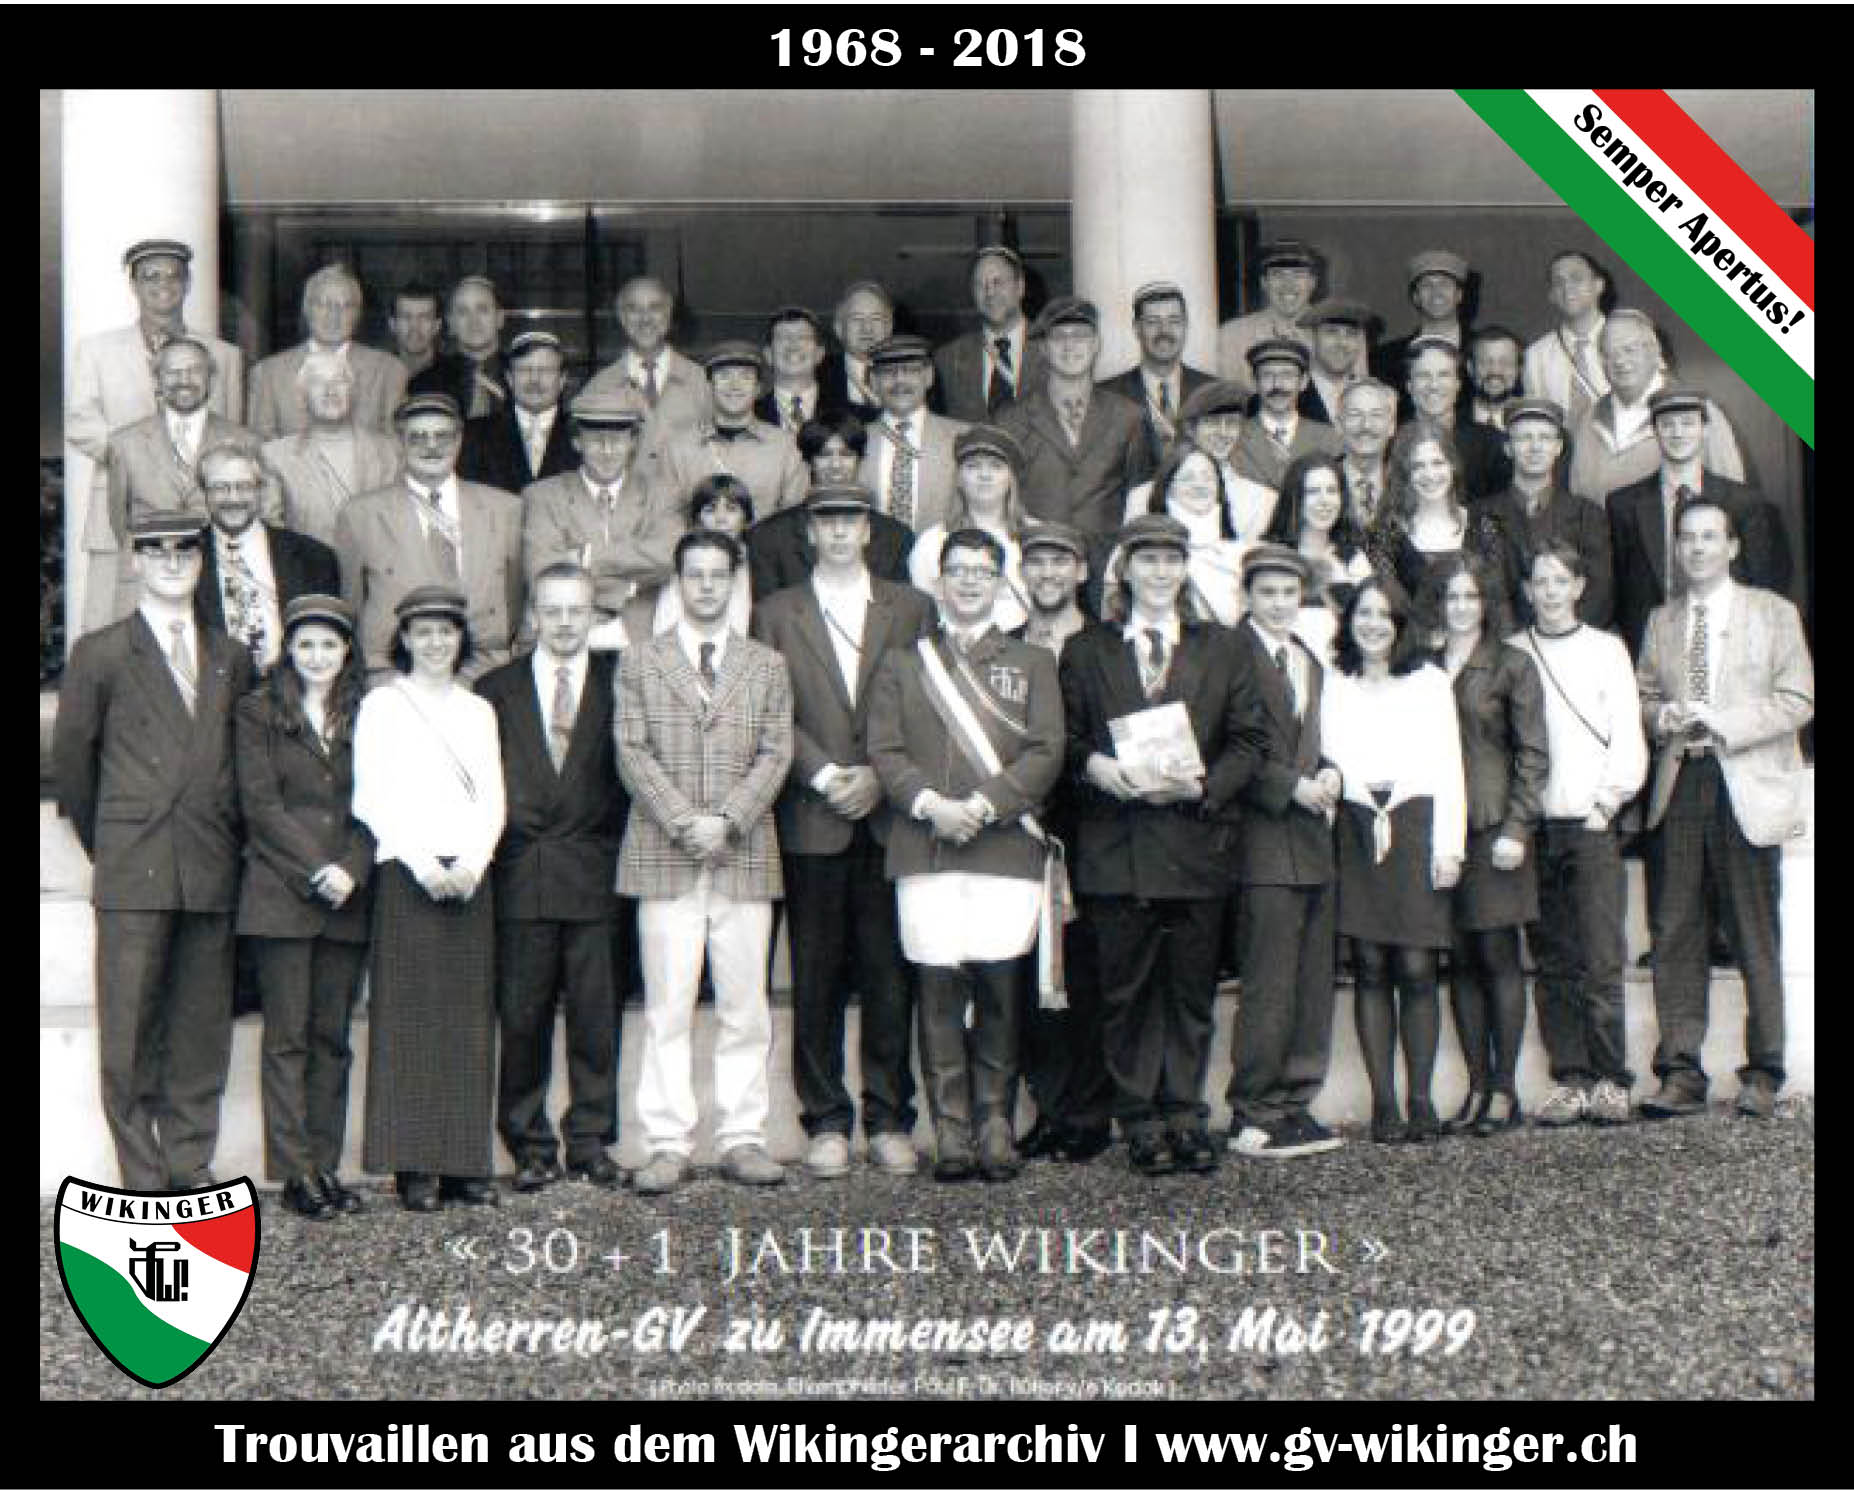 Wikinger_1968-2018_Altherren-GV-1999.jpg